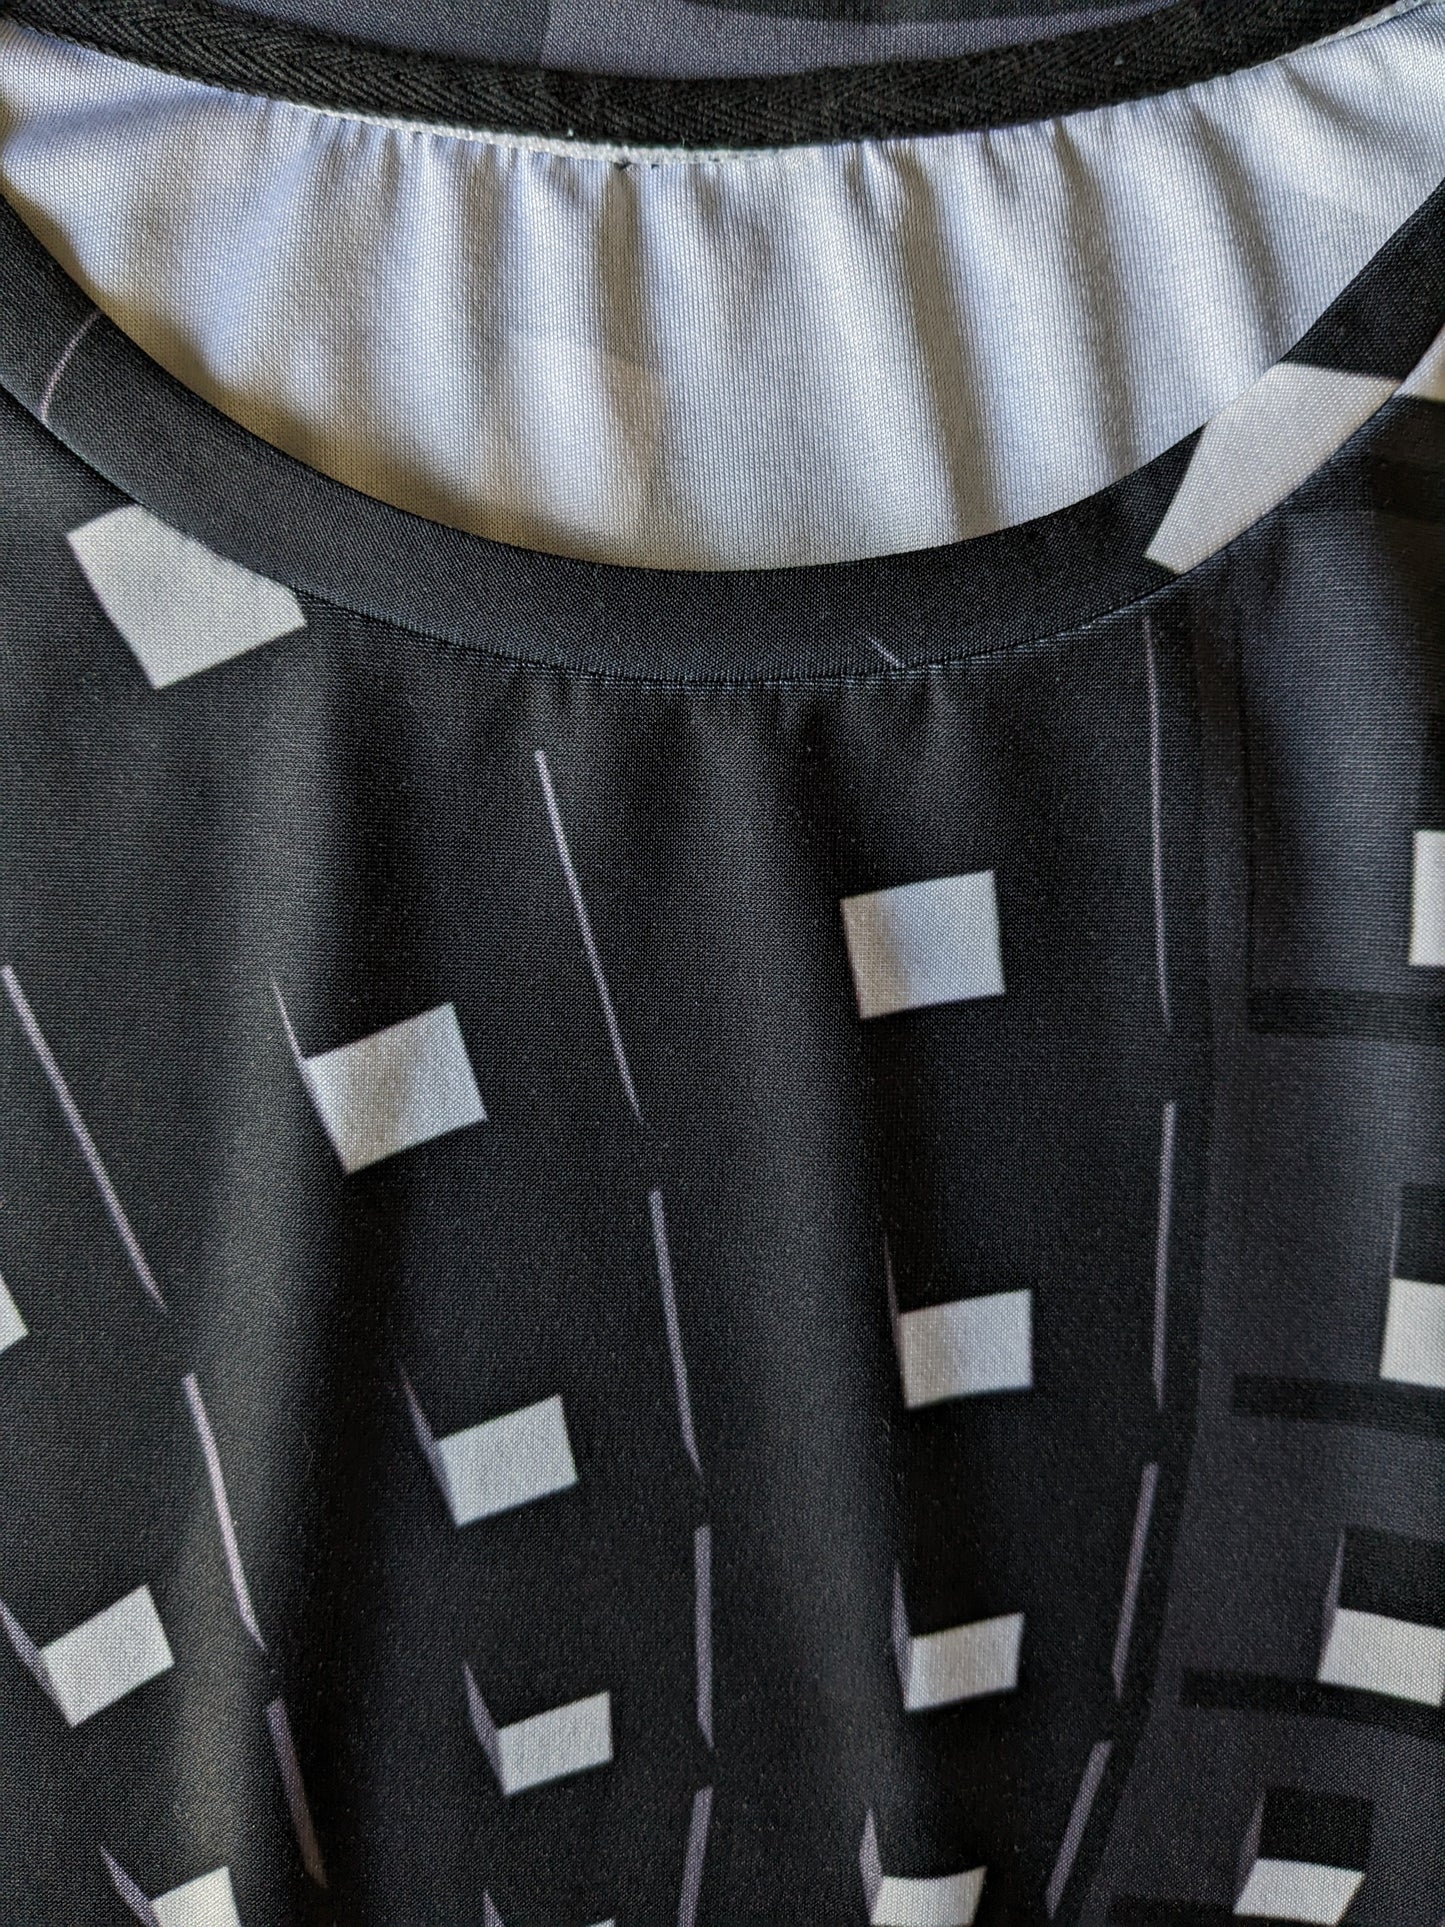 Geometrisches Druckhemd. Schwarz grau weiß gefärbt. Größe M. Stretch.